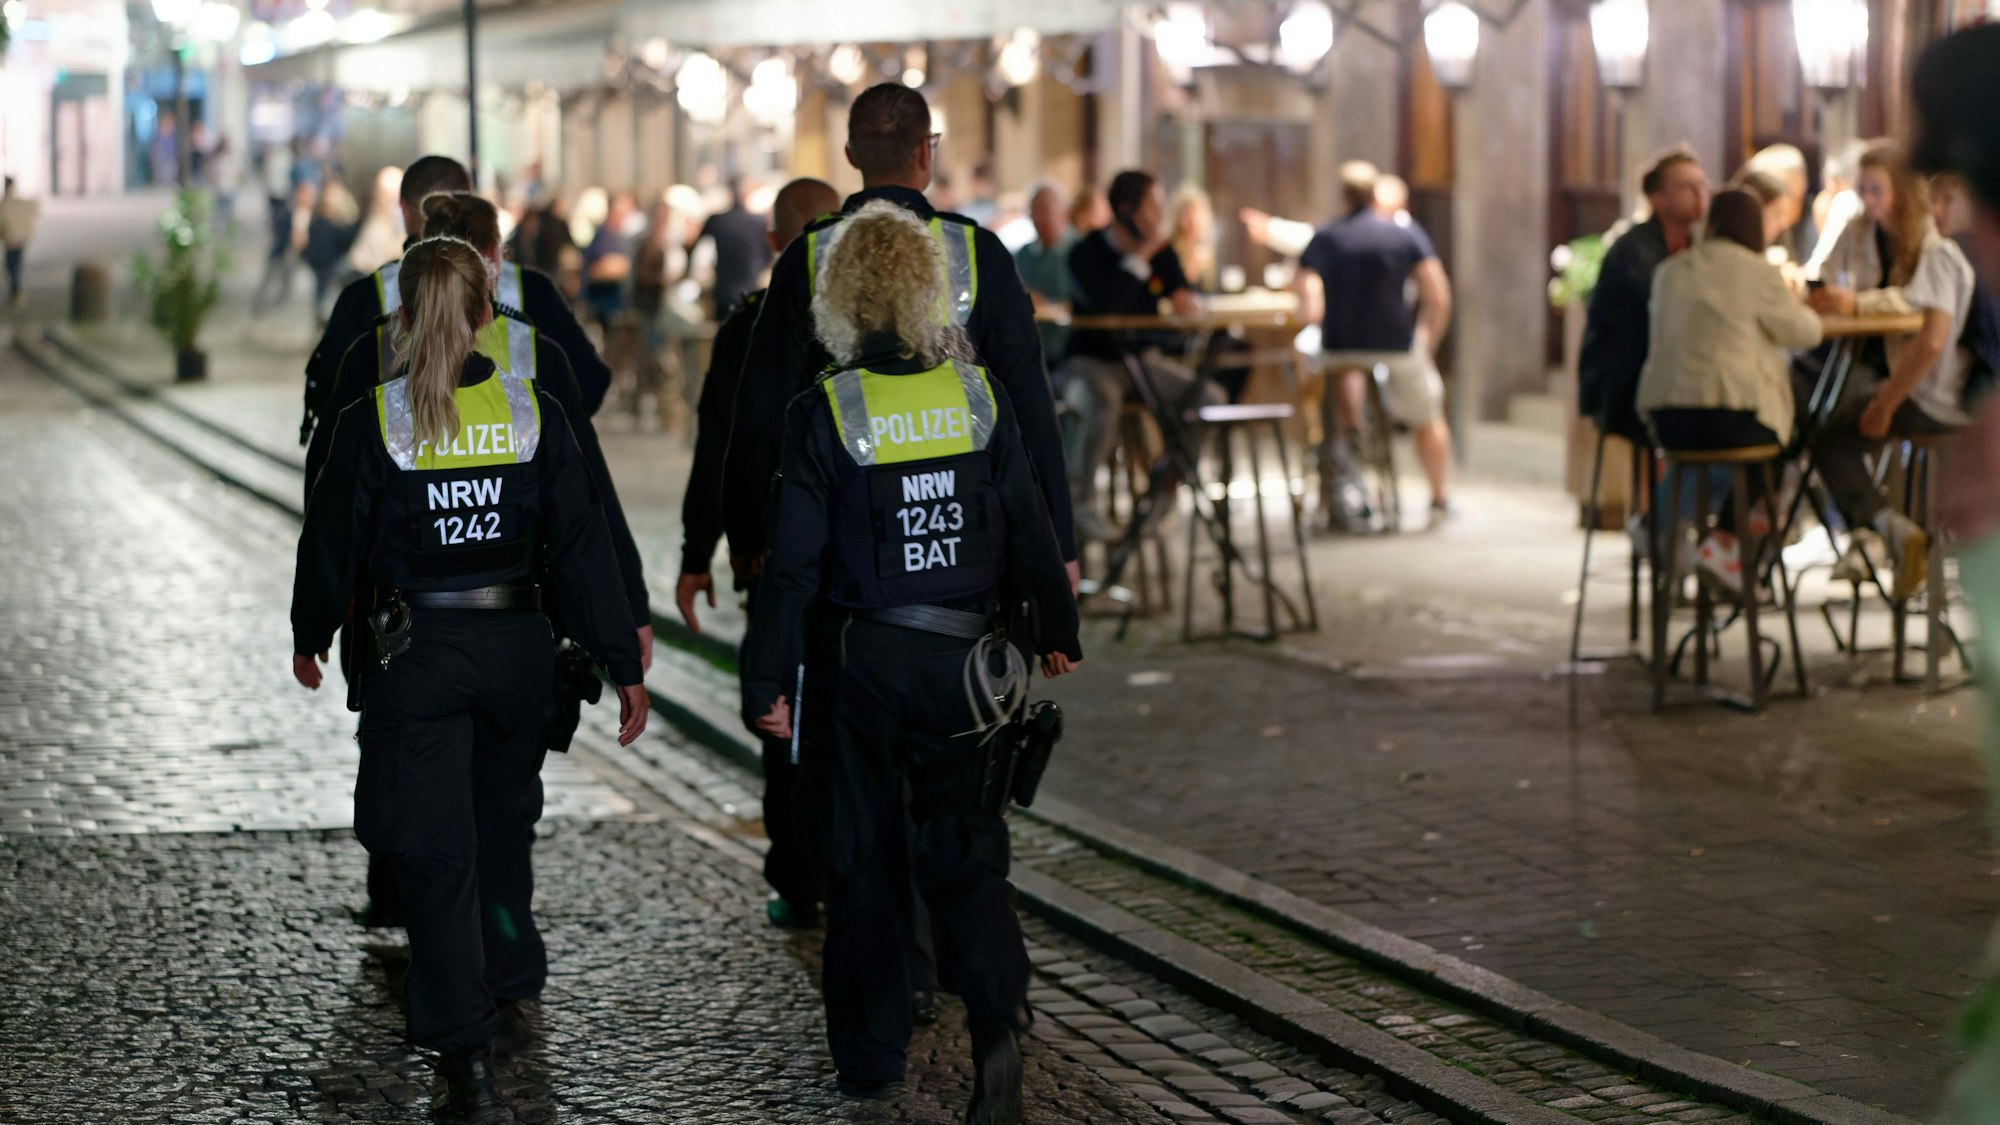 Polizisten im Dienst patrouillieren nach Mitternacht in der Altstadt zwischen Feiernden.